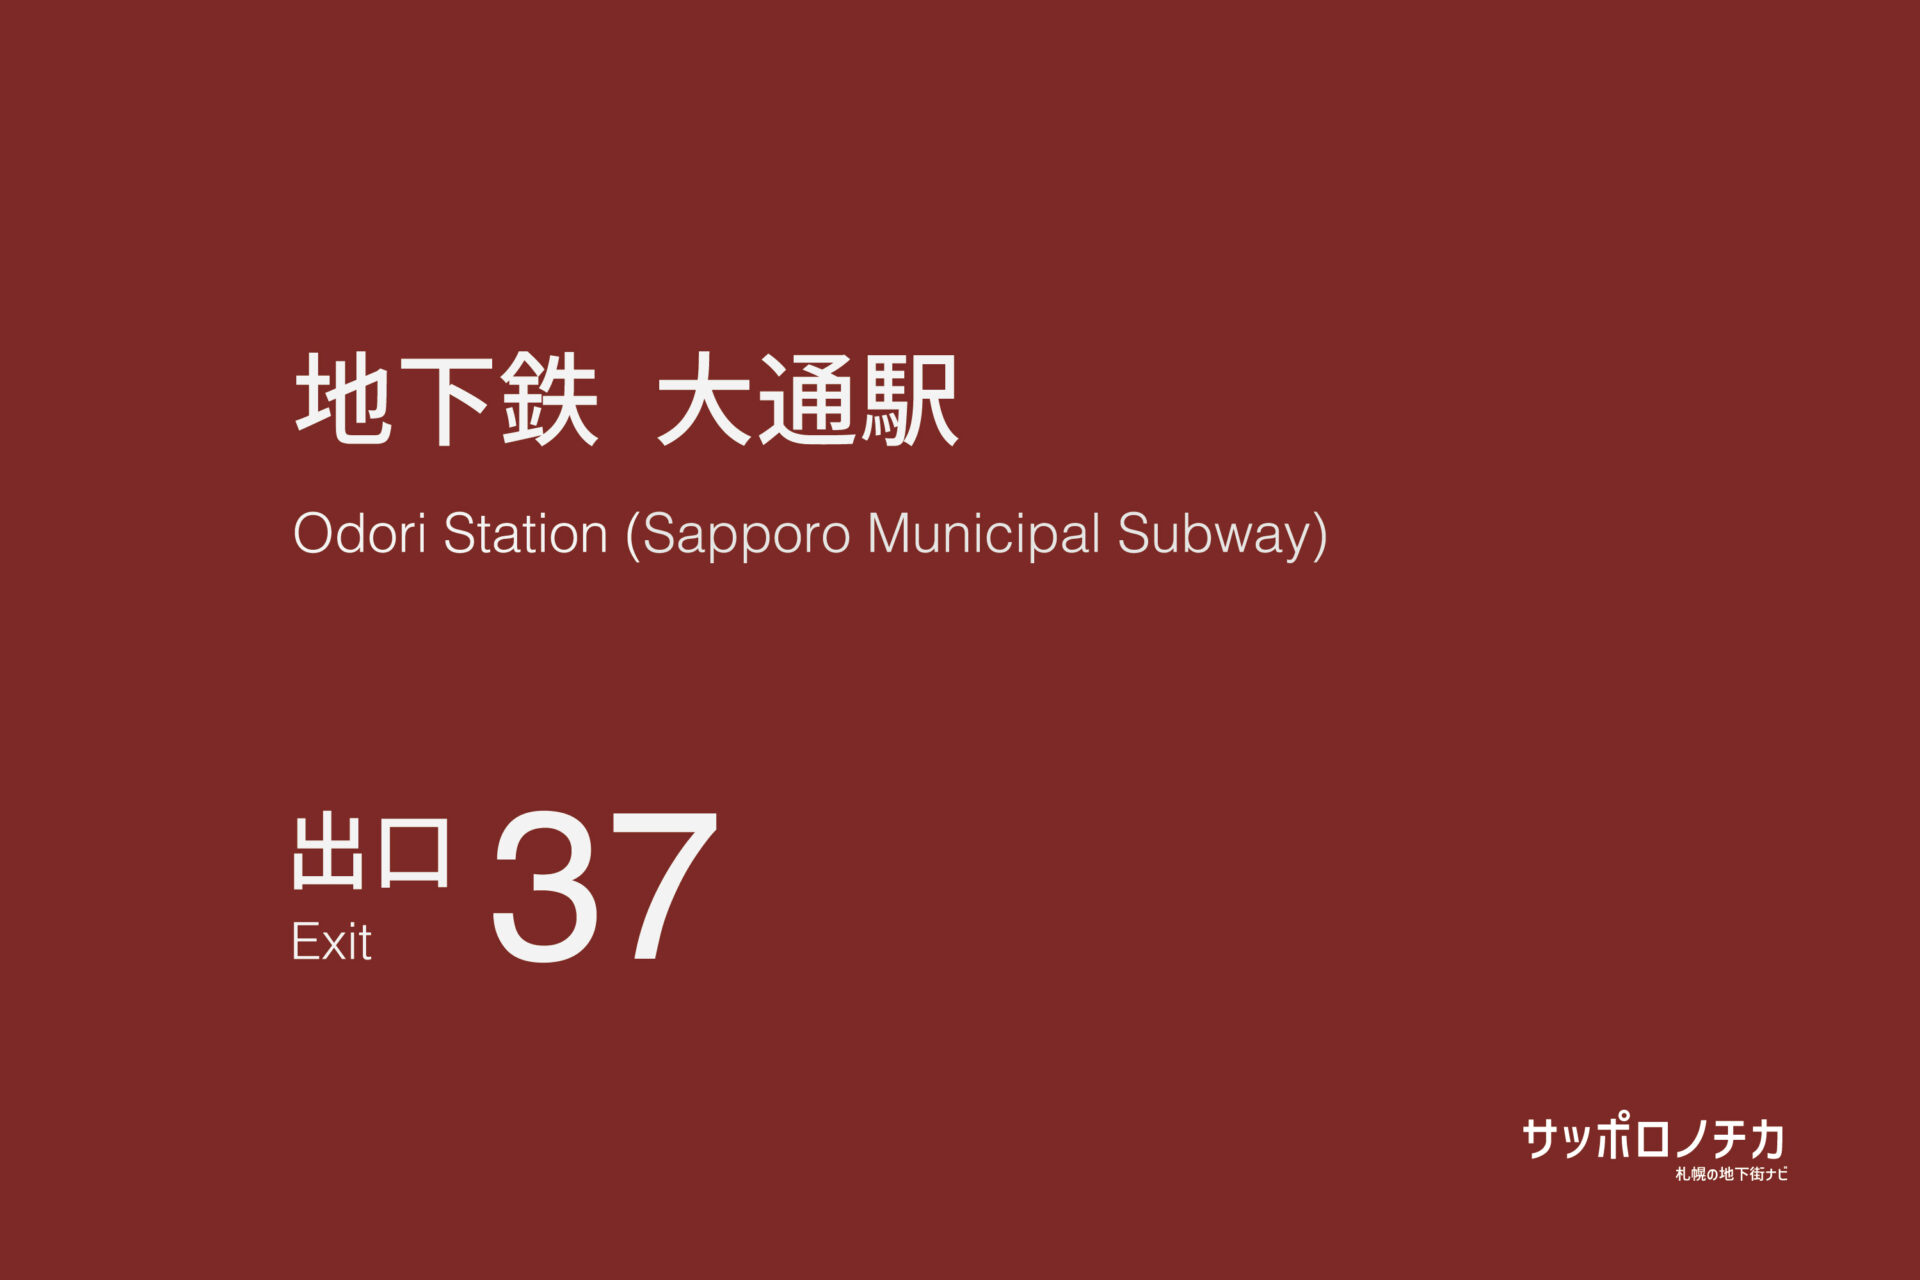 札幌市営地下鉄「大通駅」37番出口